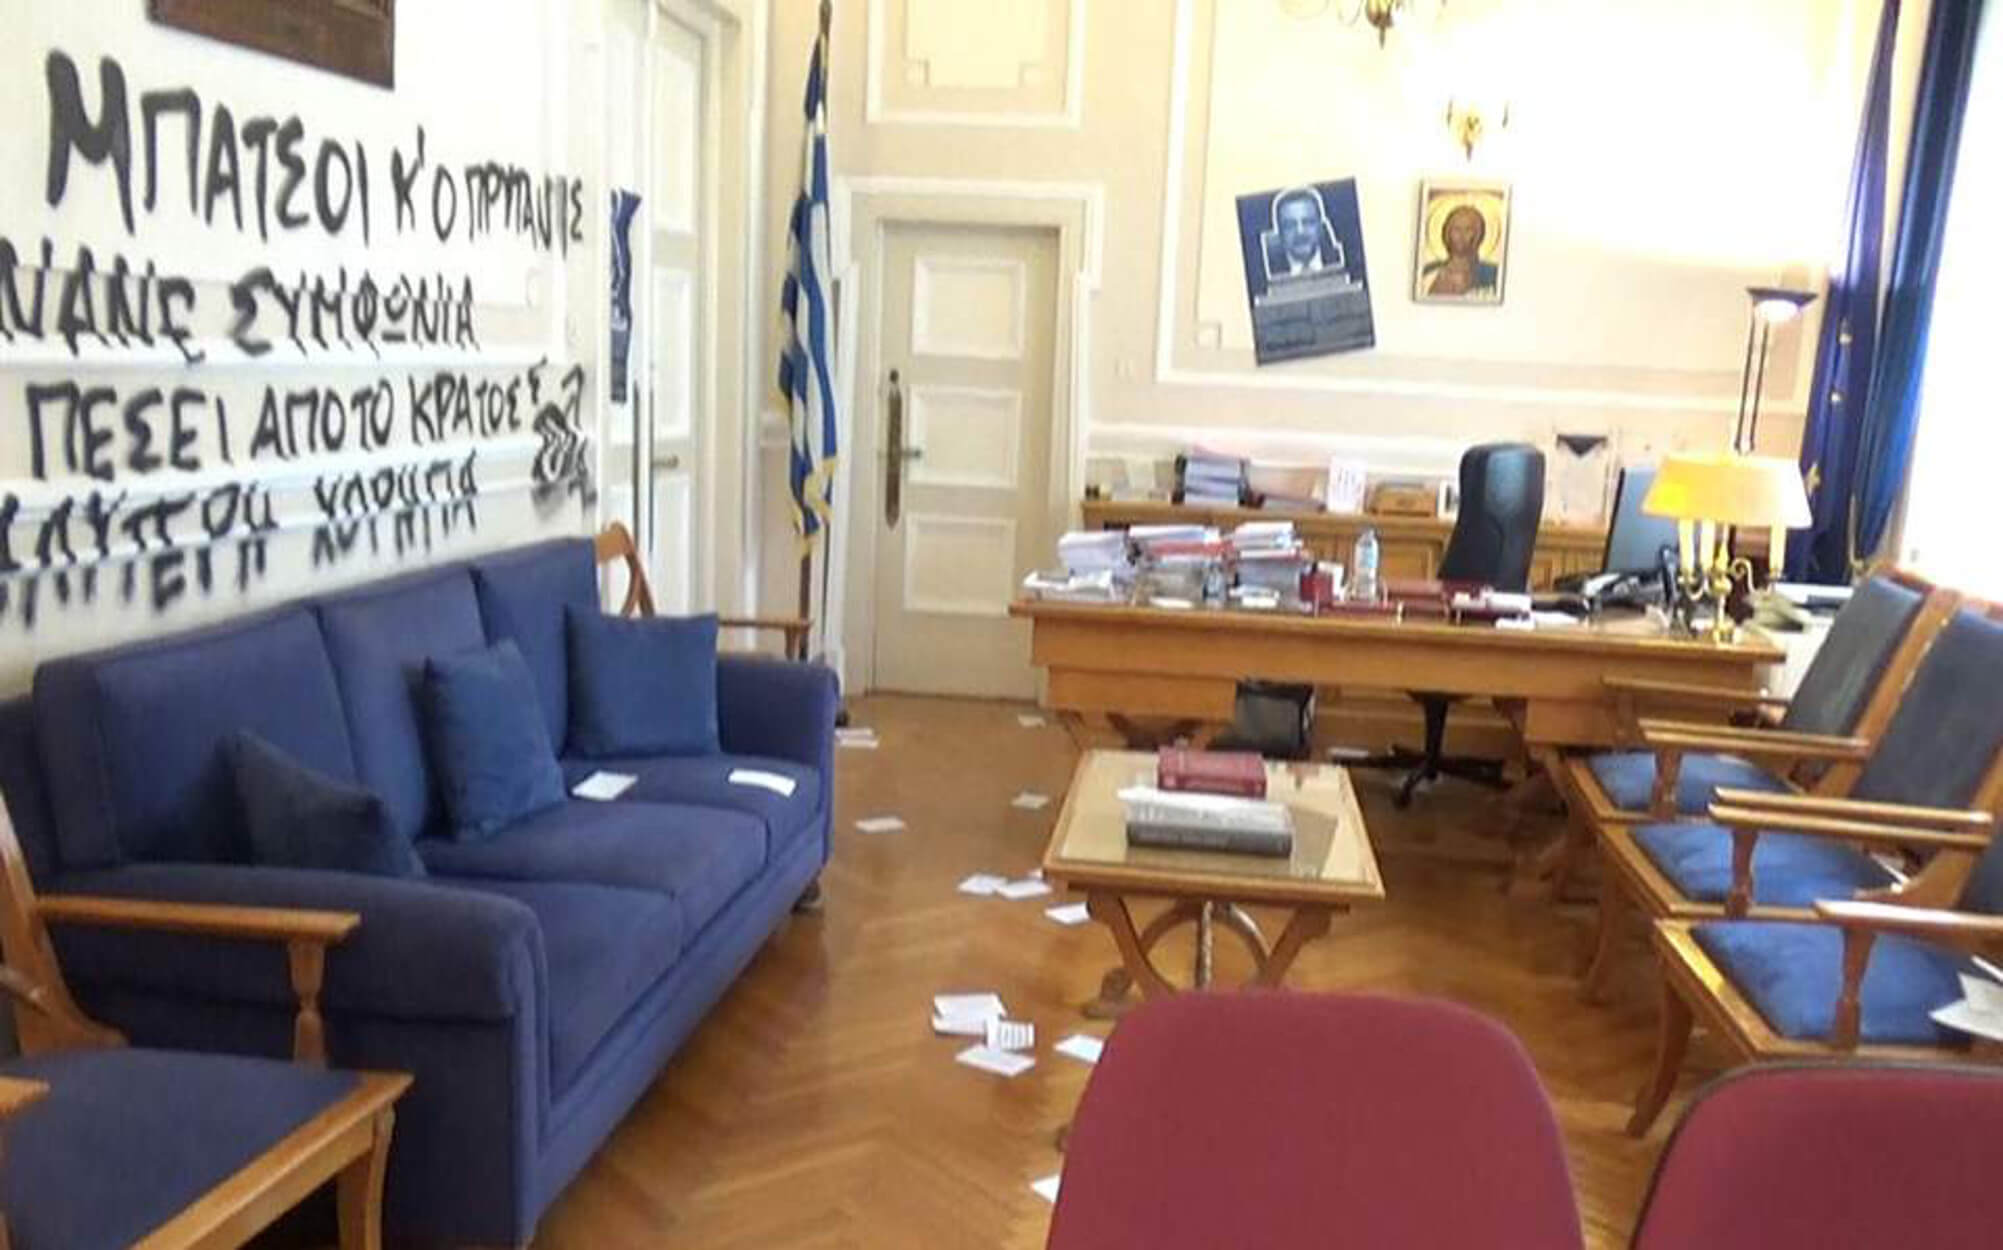 Εισβολή στο γραφείο του Πρύτανη της ΑΣΟΕΕ – Συνθήματα στους τοίχους και τρικάκια [pics]